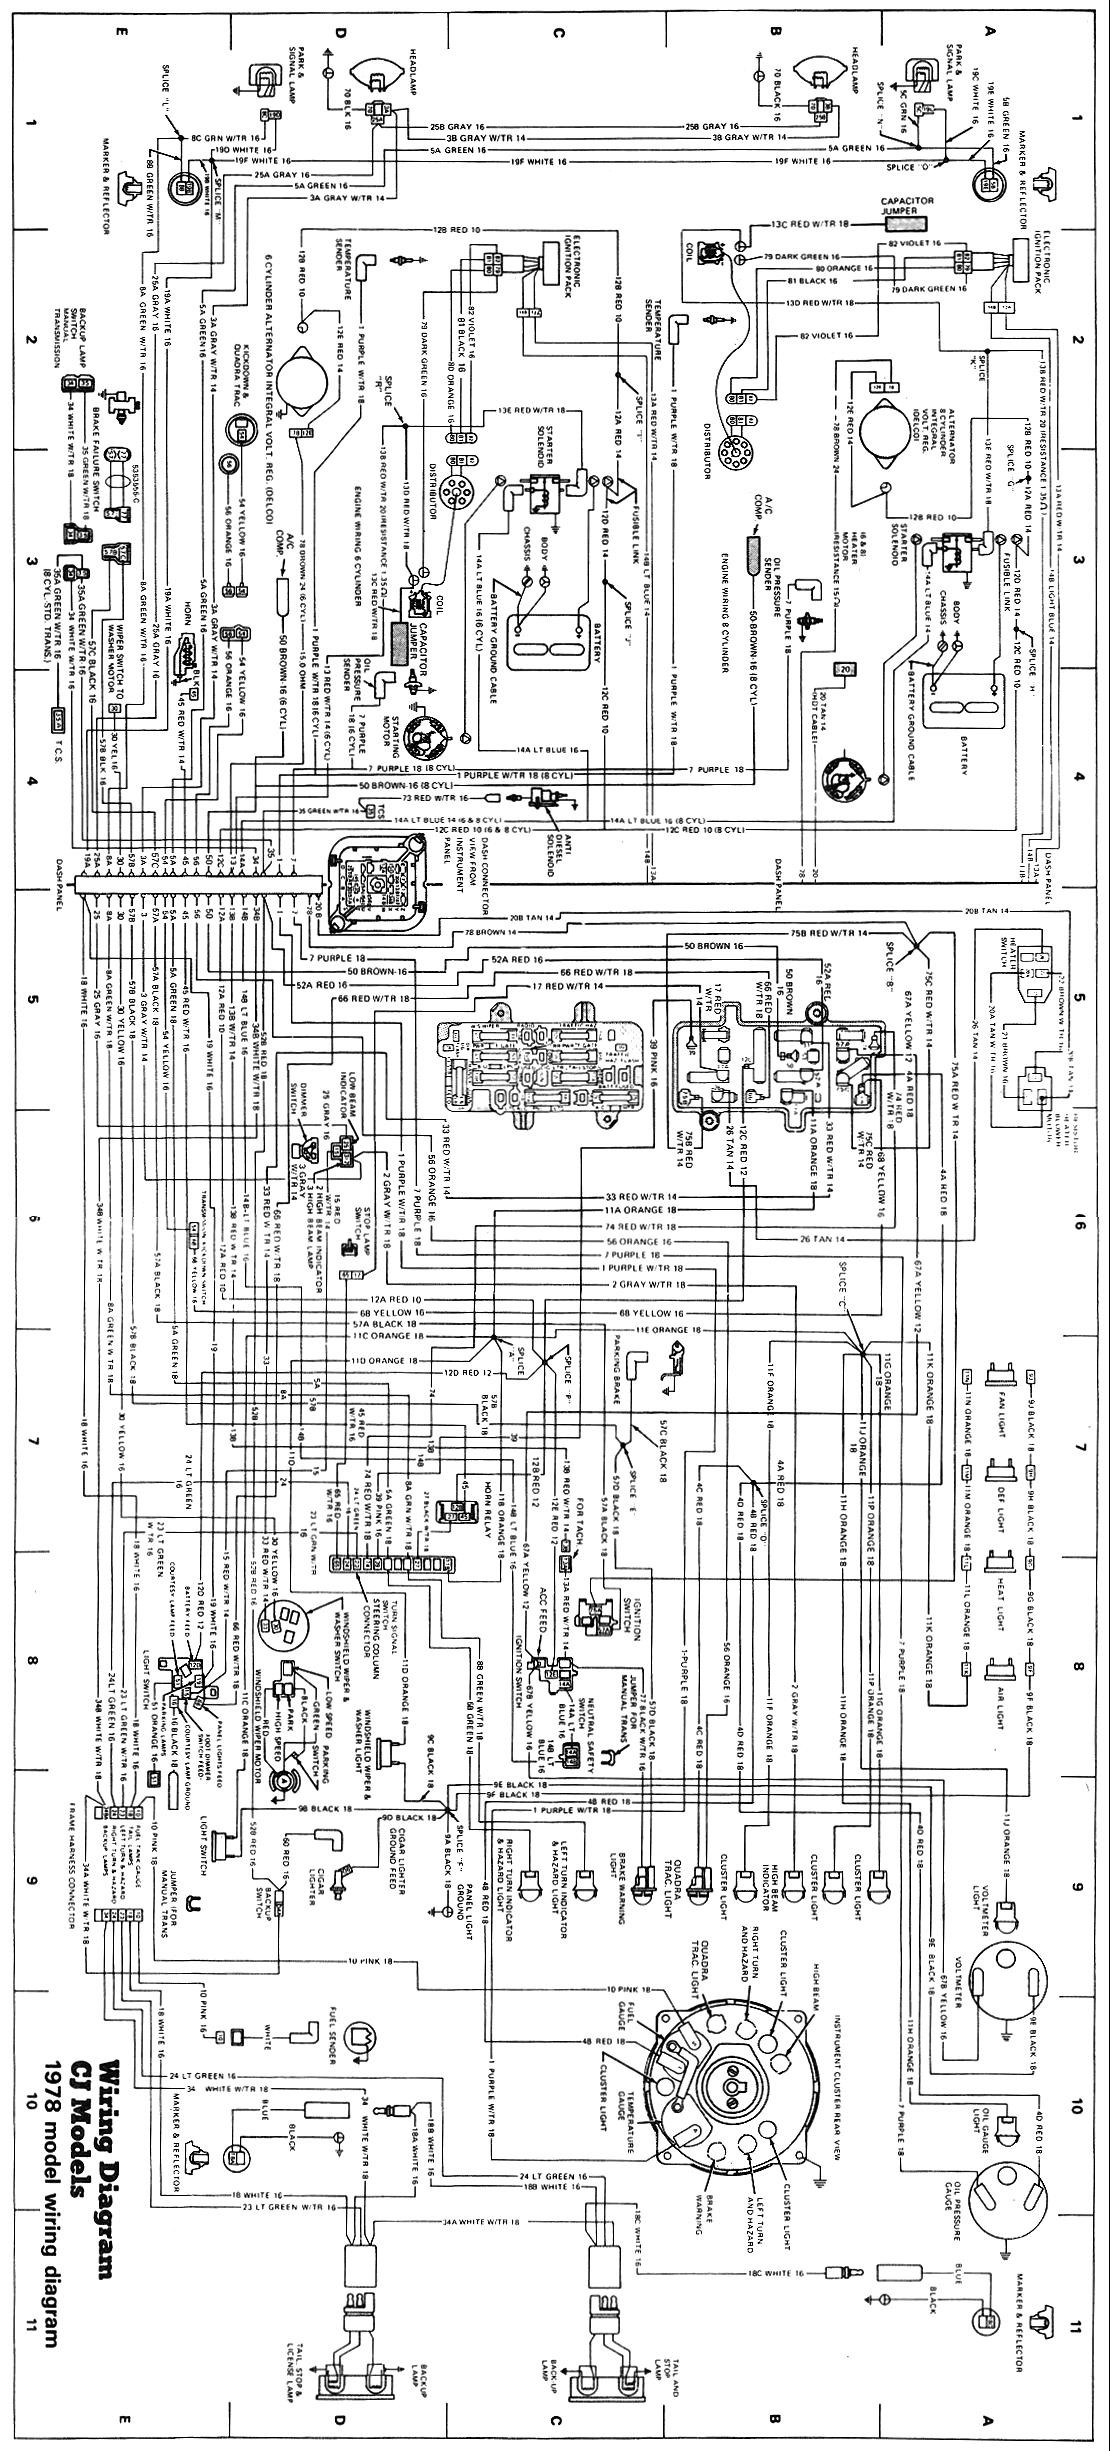 Willys Jeep Wiring Diagram Wiring Schematics Of Willys Jeep Wiring Diagram